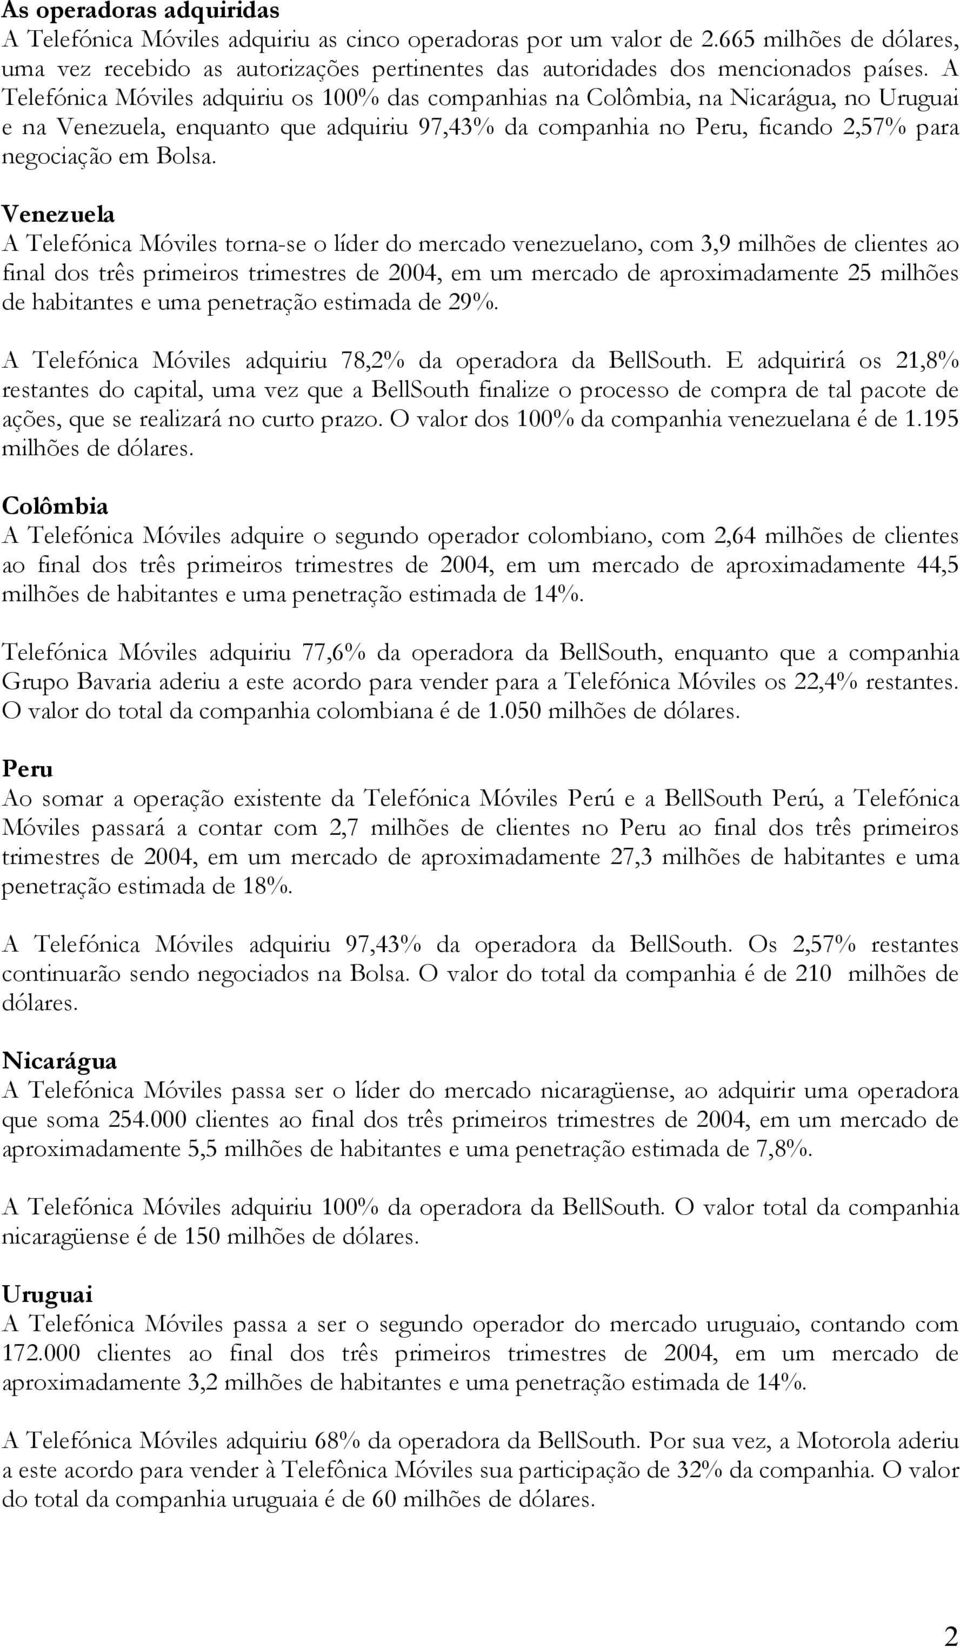 A Telefónica Móviles adquiriu os 100% das companhias na Colômbia, na Nicarágua, no Uruguai e na Venezuela, enquanto que adquiriu 97,43% da companhia no Peru, ficando 2,57% para negociação em Bolsa.